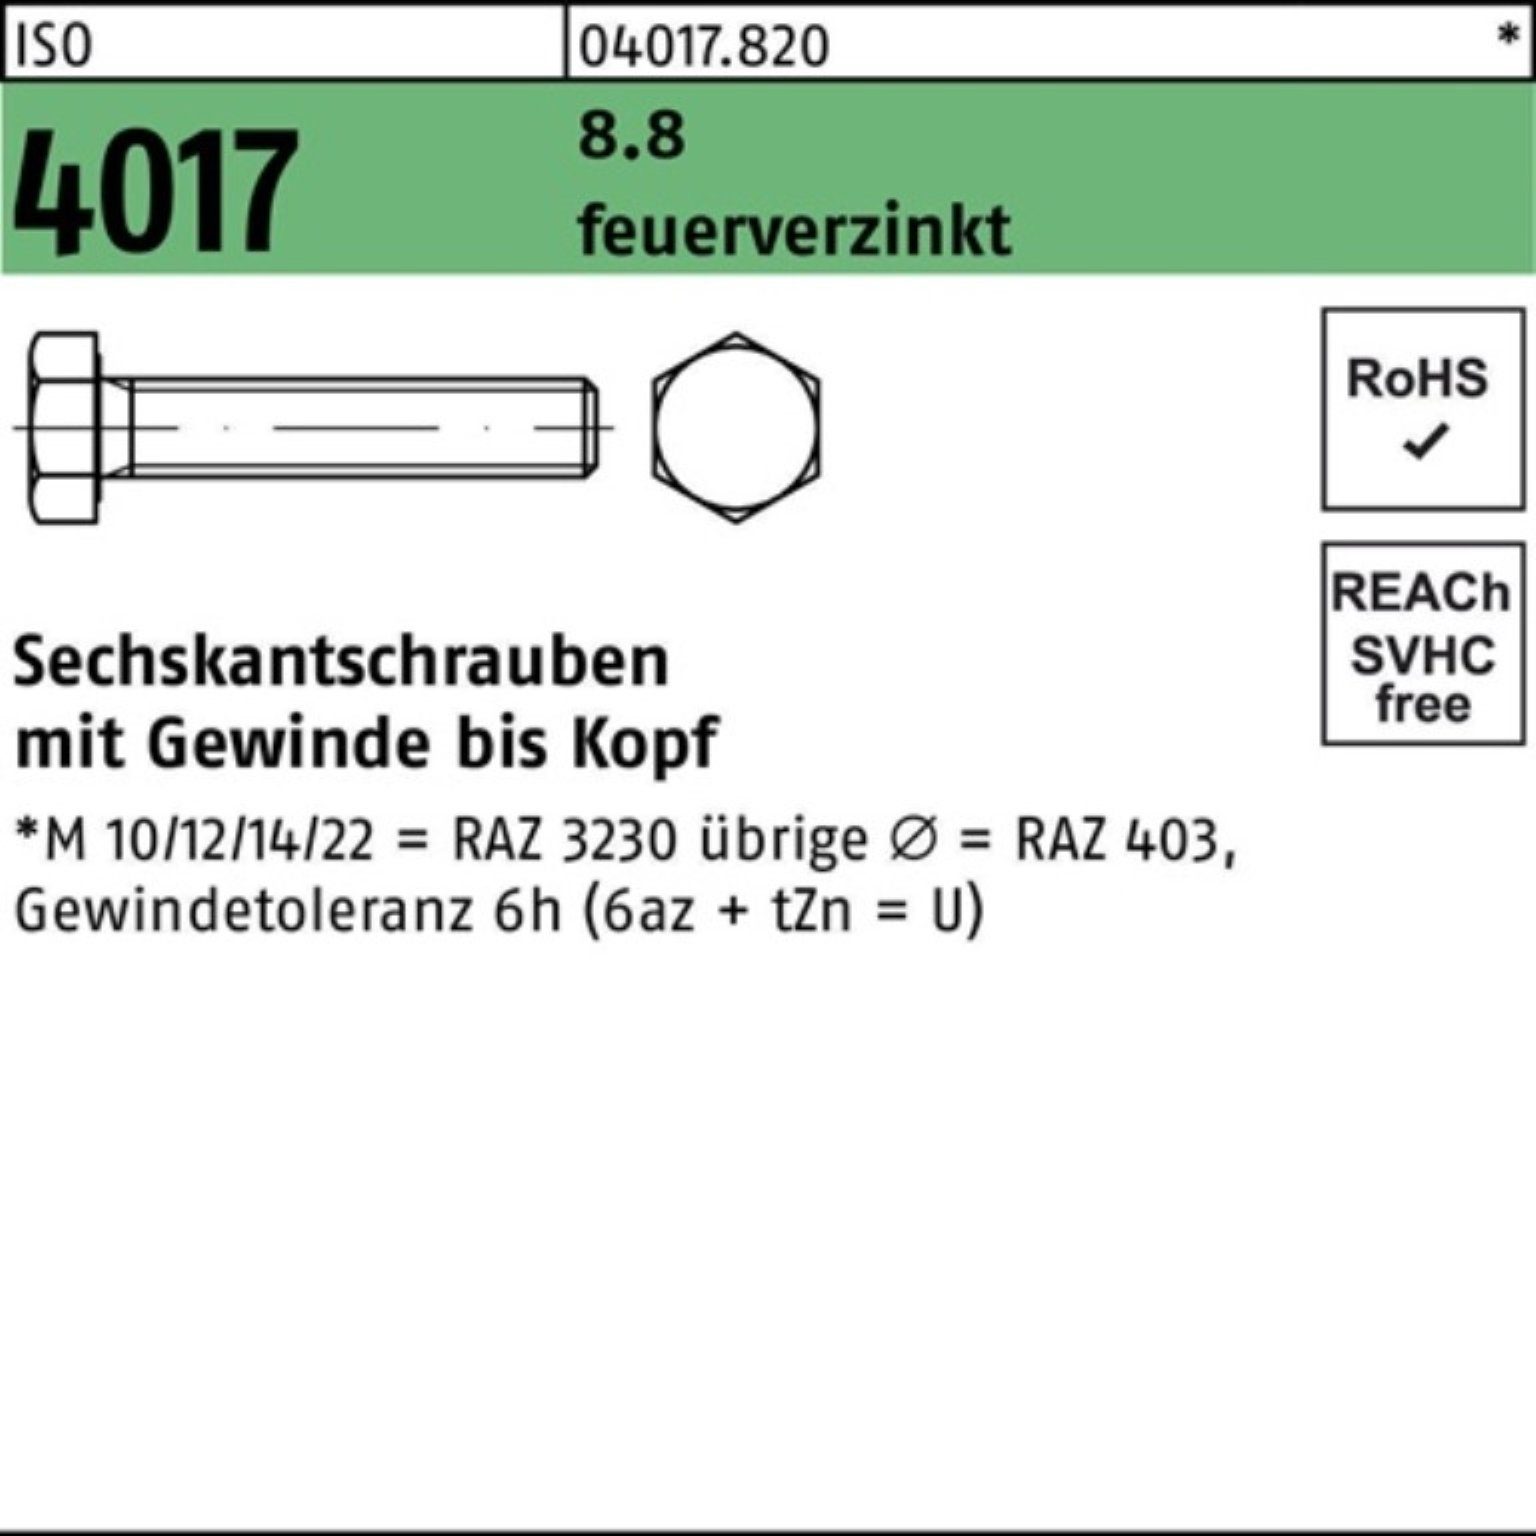 Bufab Sechskantschraube 8.8 ISO Sechskantschraube M8x Pack 4017 VG feuerverz. St 200 200er 10